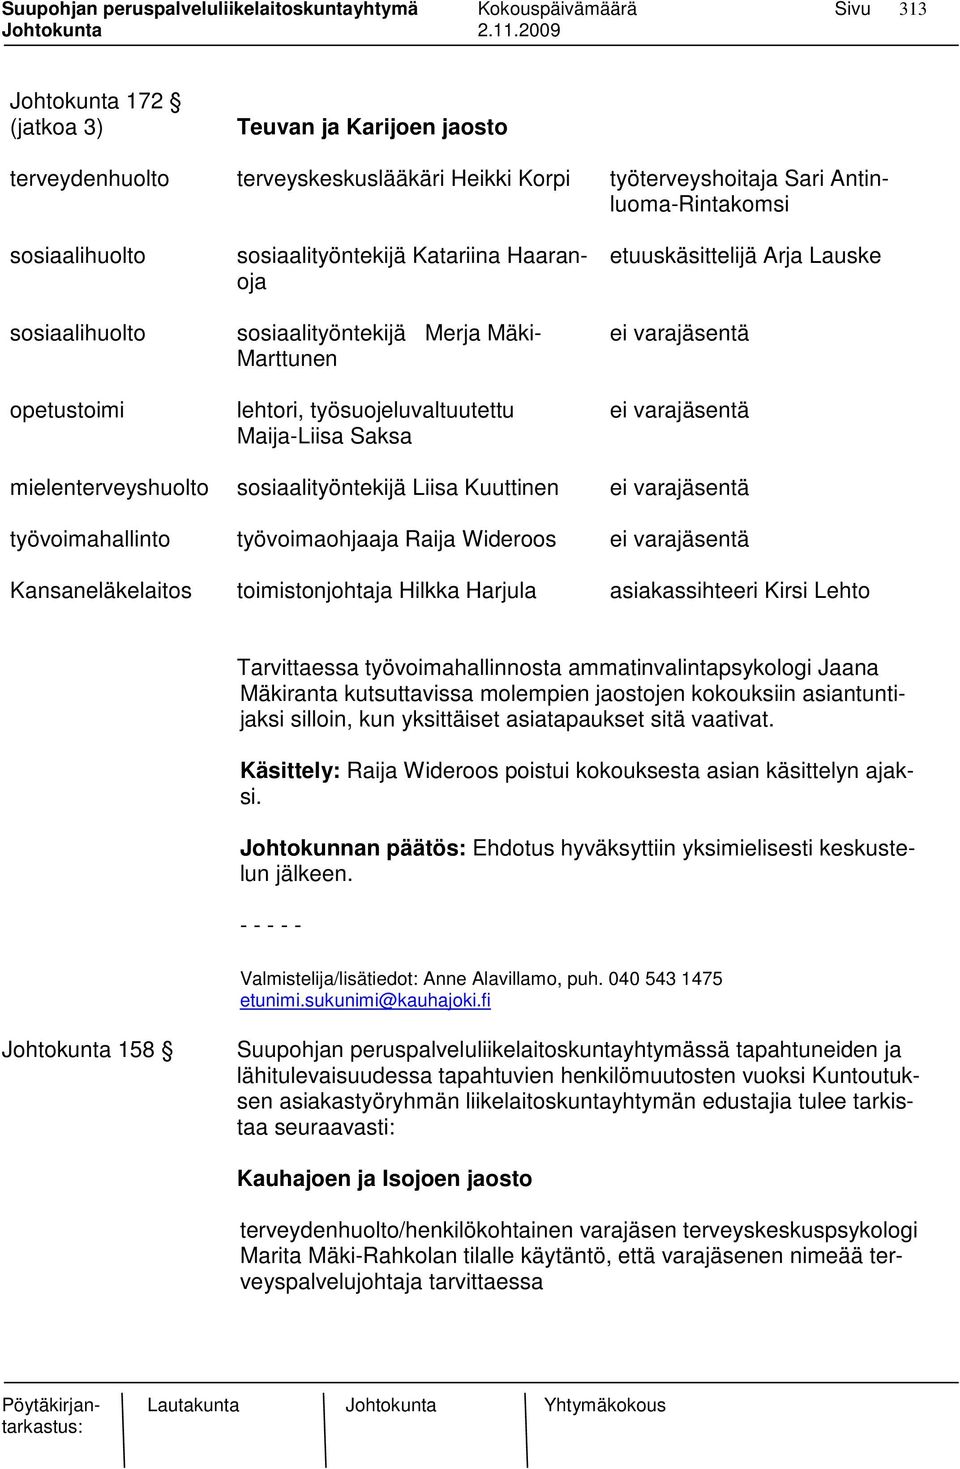 mielenterveyshuolto sosiaalityöntekijä Liisa Kuuttinen ei varajäsentä työvoimahallinto työvoimaohjaaja Raija Wideroos ei varajäsentä Kansaneläkelaitos toimistonjohtaja Hilkka Harjula asiakassihteeri